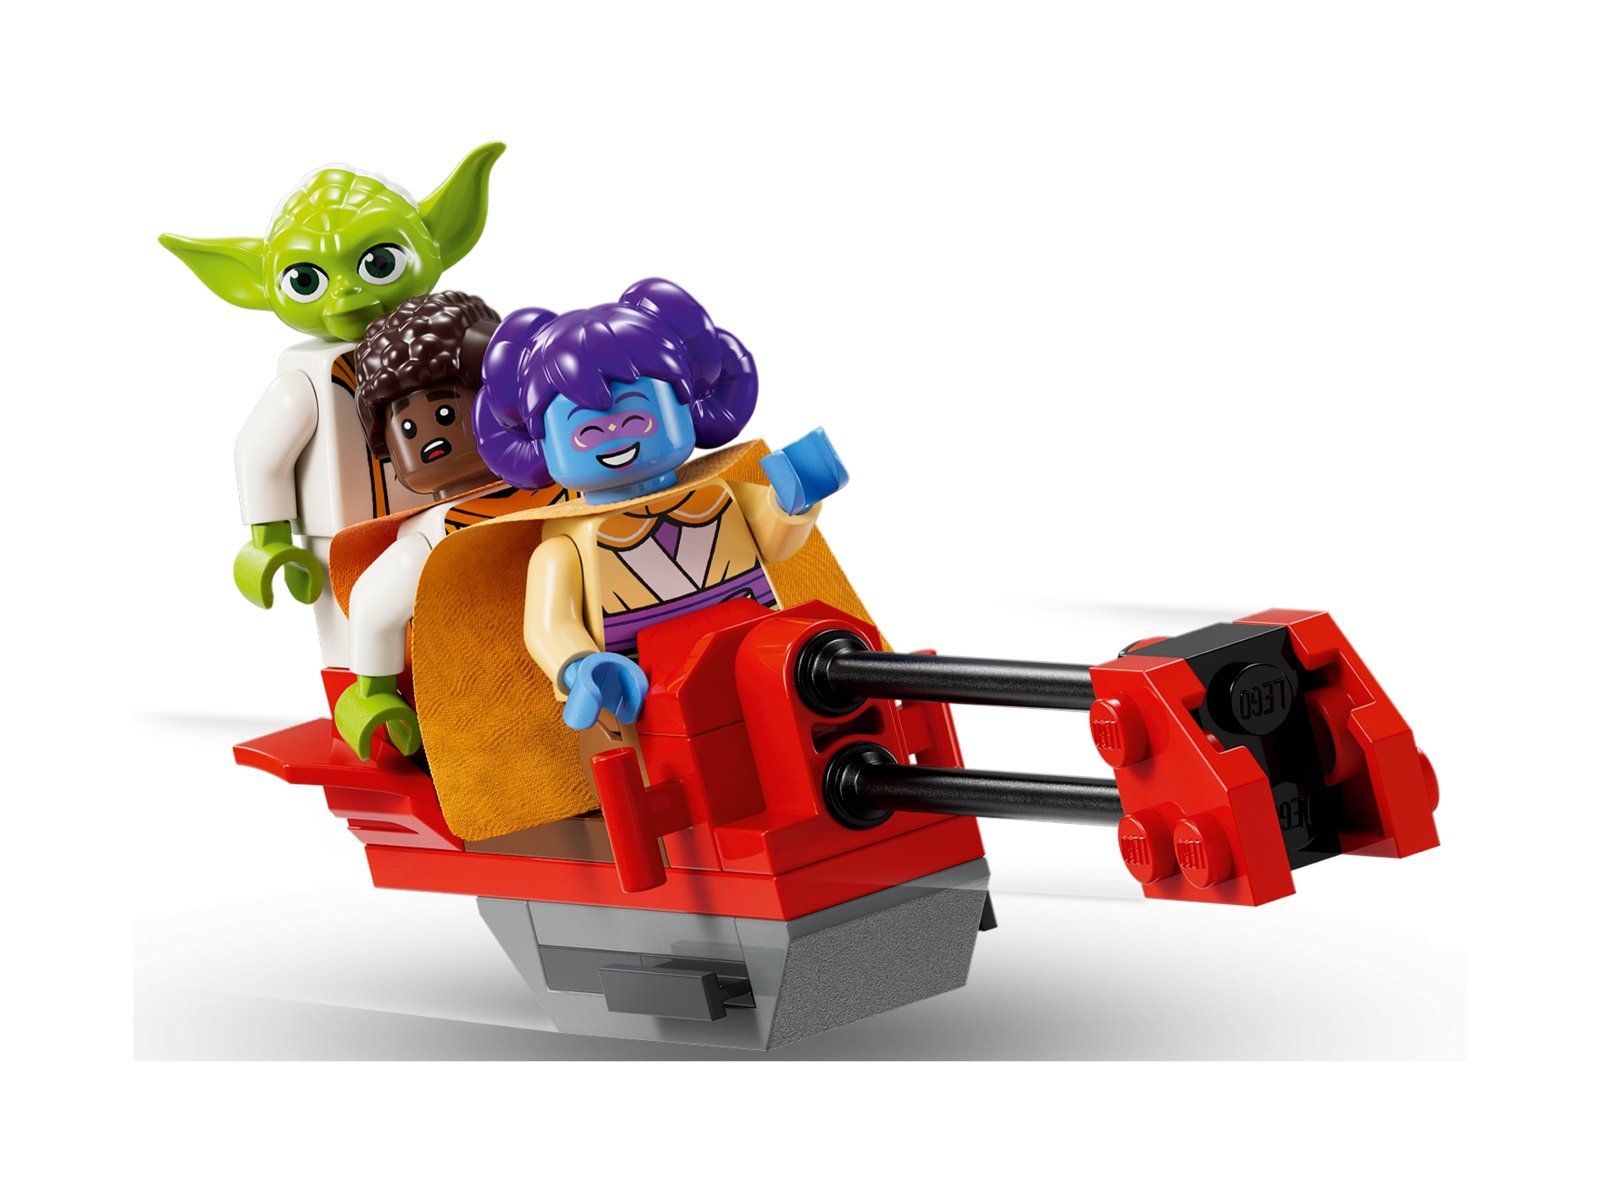 LEGO Star Wars Świątynia Jedi™ na Tenoo 75358